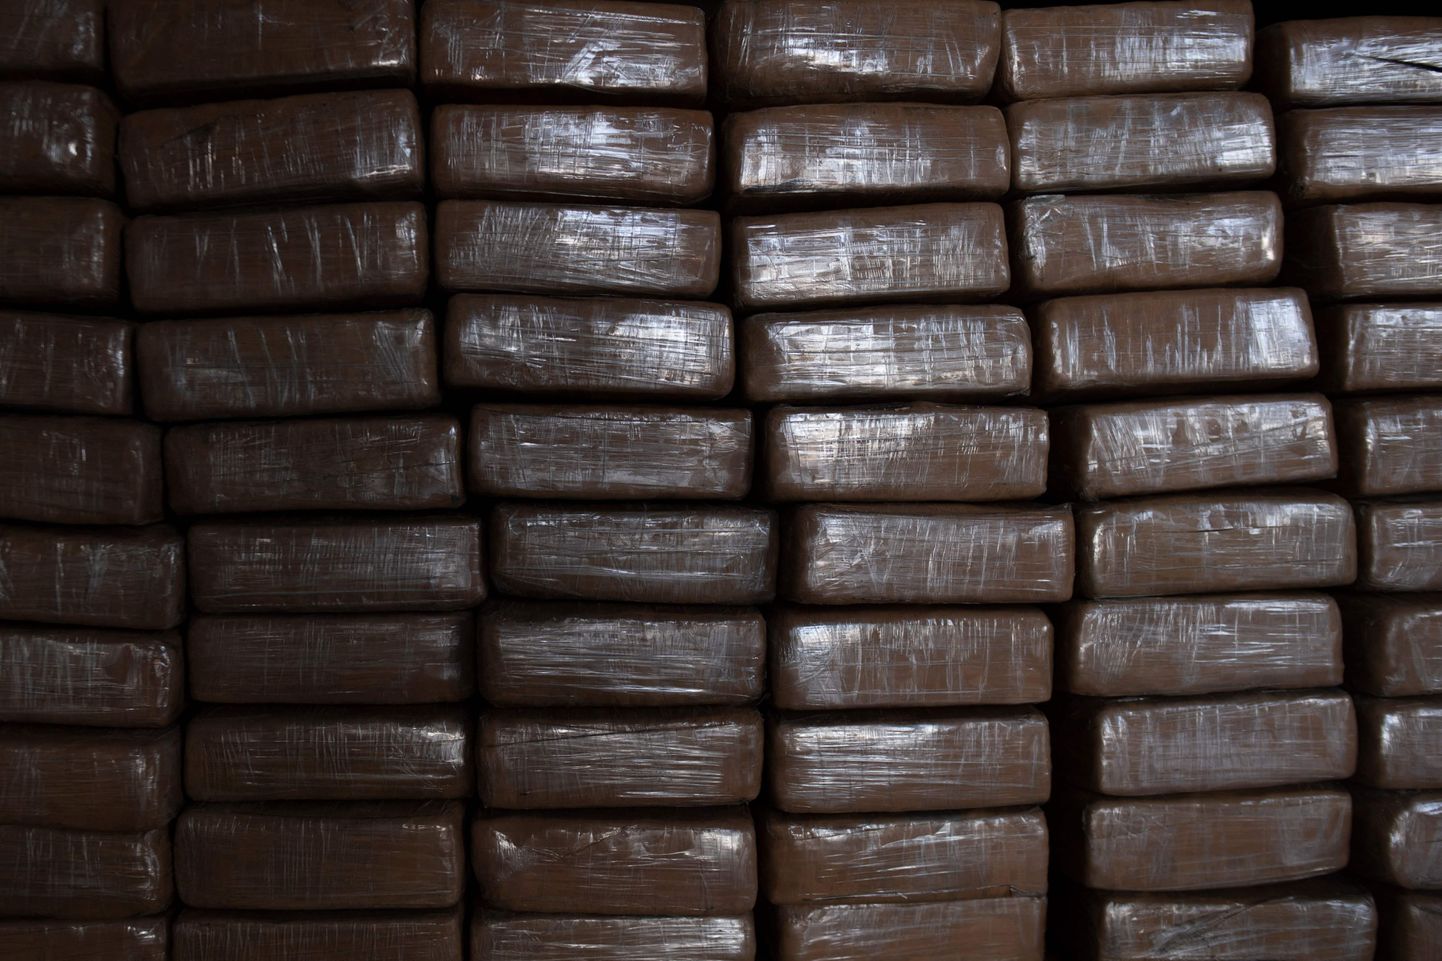 Virna laotud kokaiinipakid Hispaanias. Foto pole seotud kõnealuse juhtumiga.